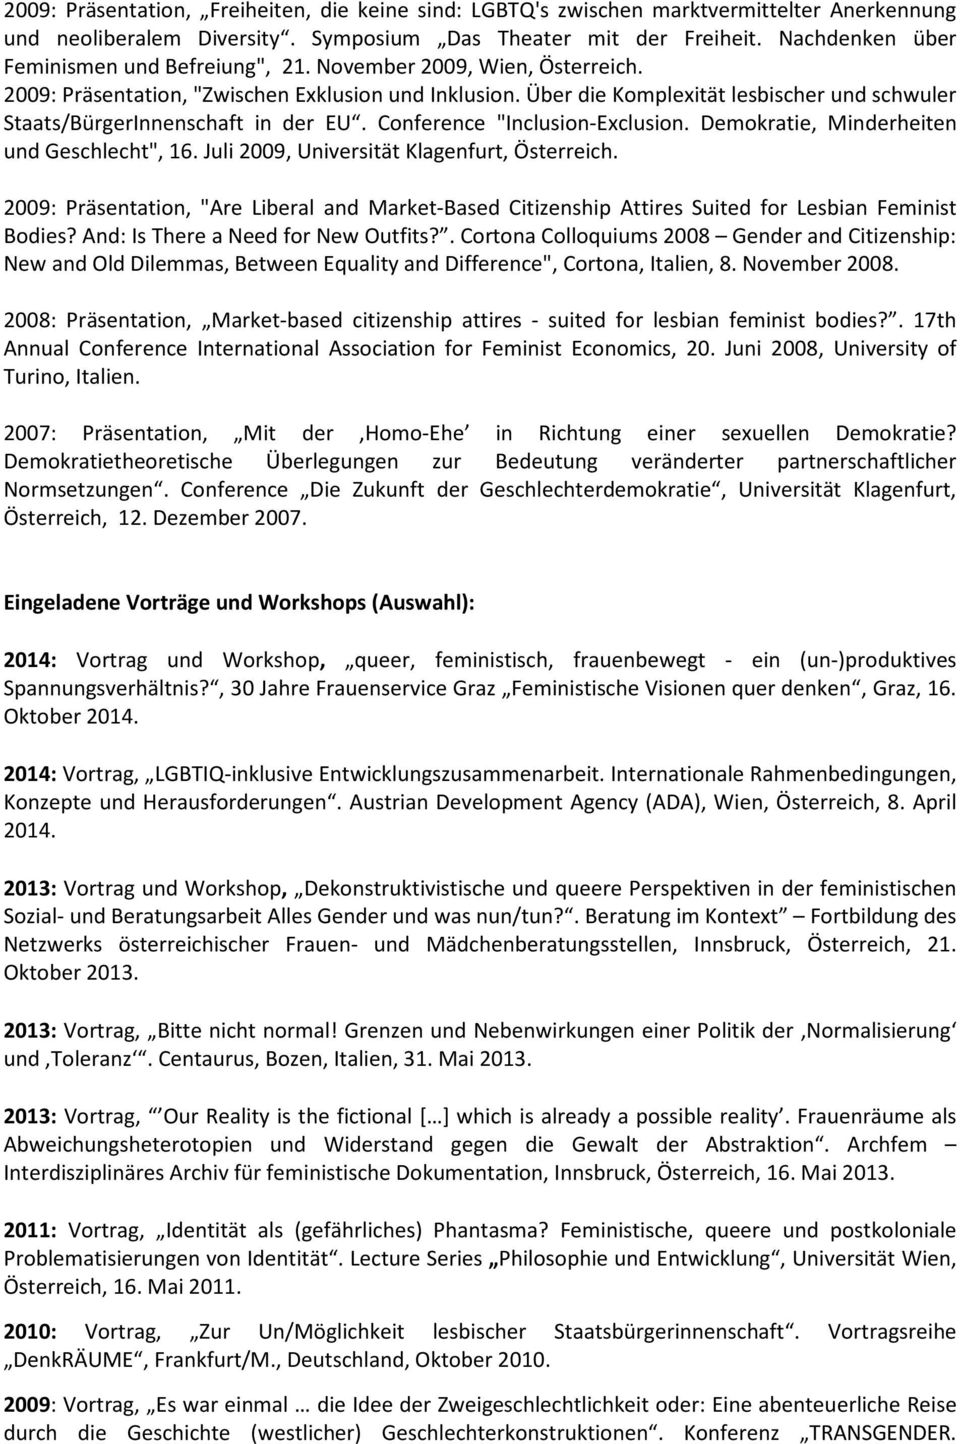 Über die Komplexität lesbischer und schwuler Staats/BürgerInnenschaft in der EU. Conference "Inclusion-Exclusion. Demokratie, Minderheiten und Geschlecht", 16.